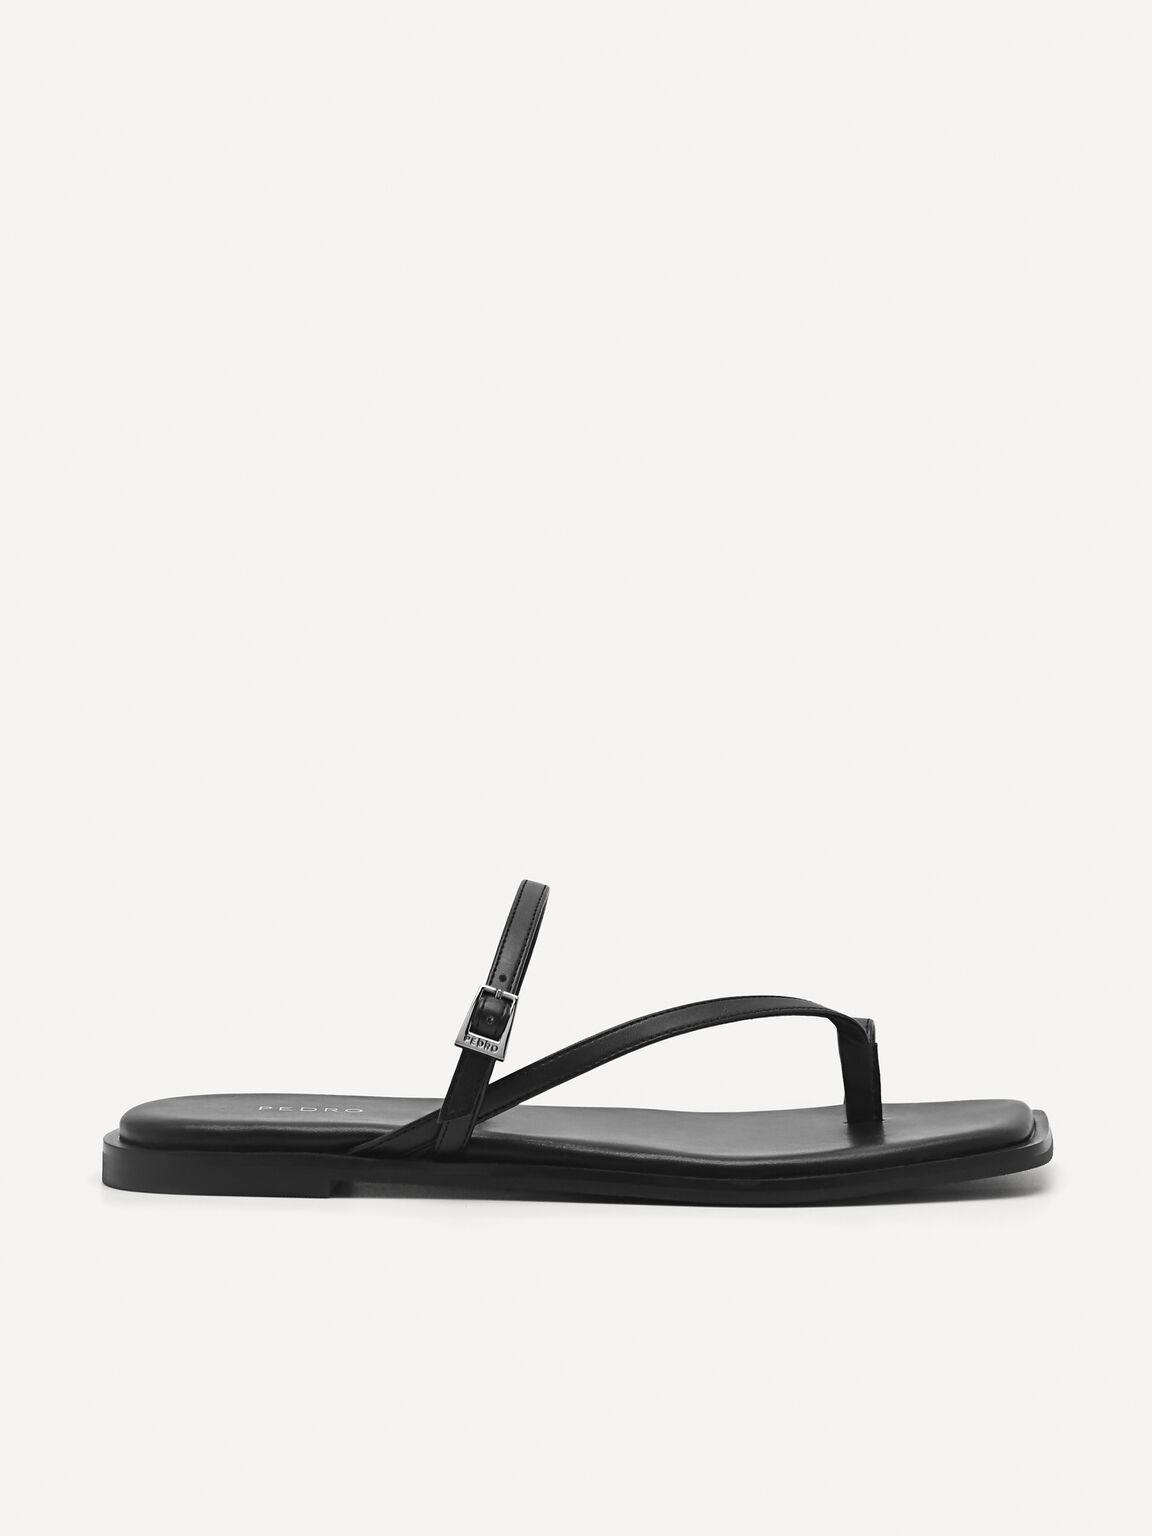 Lyra Toe Loop Sandals, Black